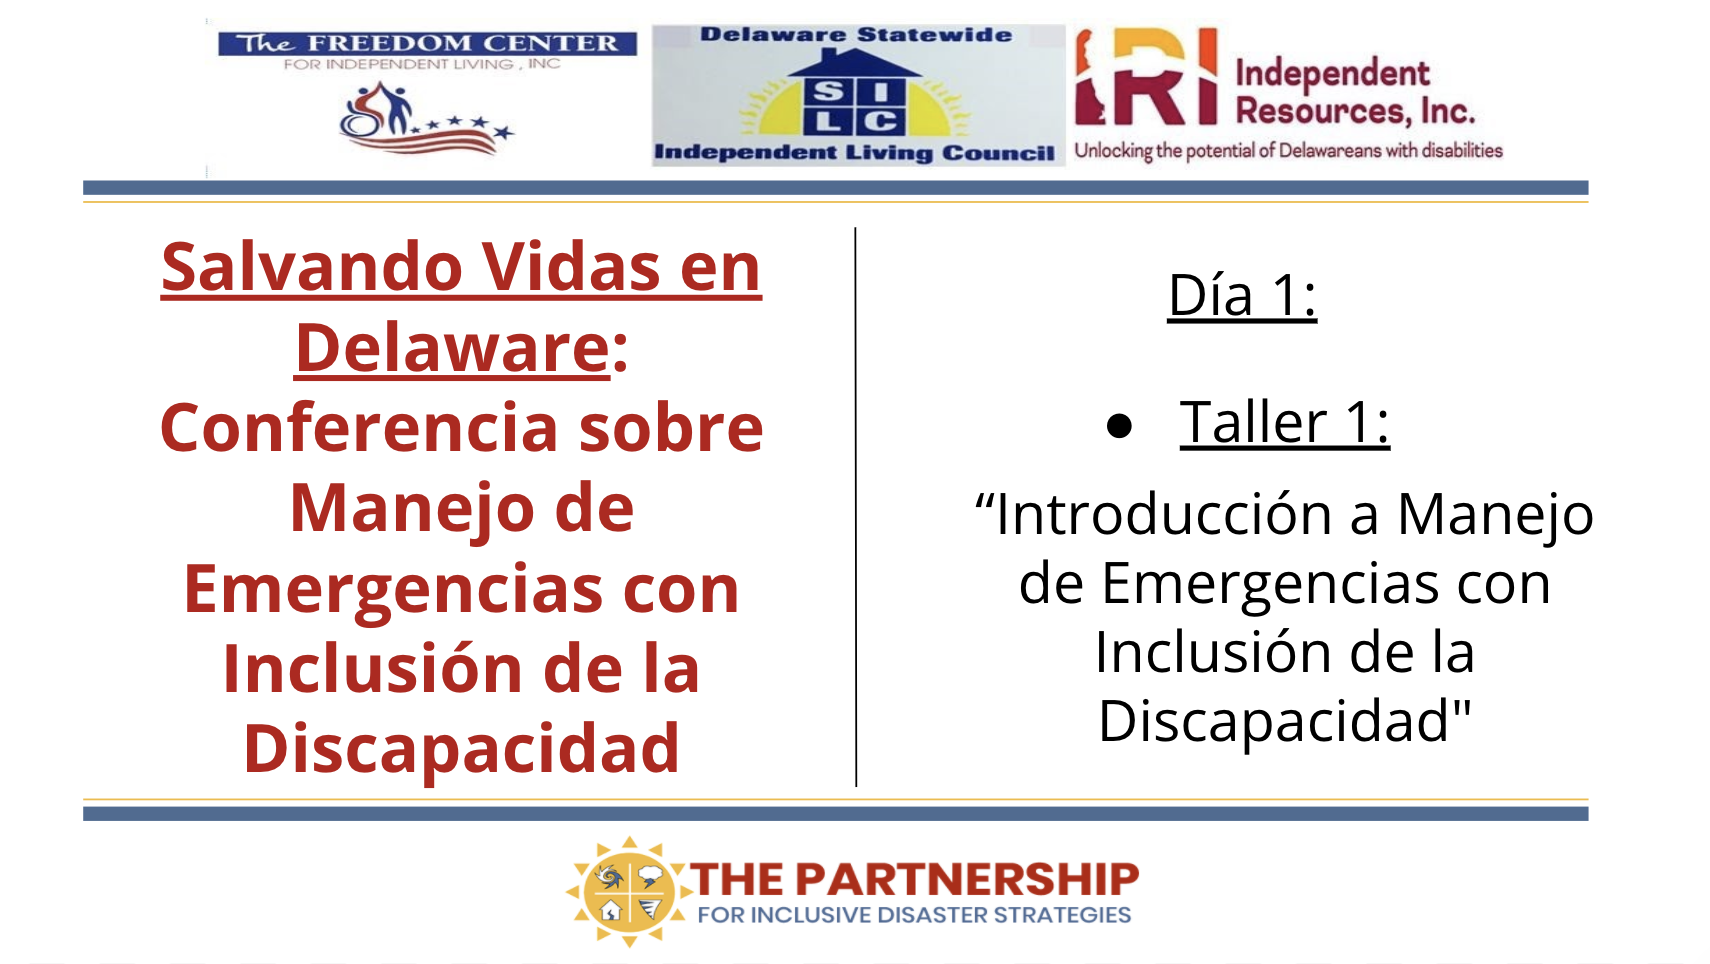 Imagen con los logos de El Partnership, FCIL, DE SILC y IRI. Texto lee “Día 2” y “Taller 1, "Introducción a Manejo de Emergencias con Inclusión de la Discapacidad."